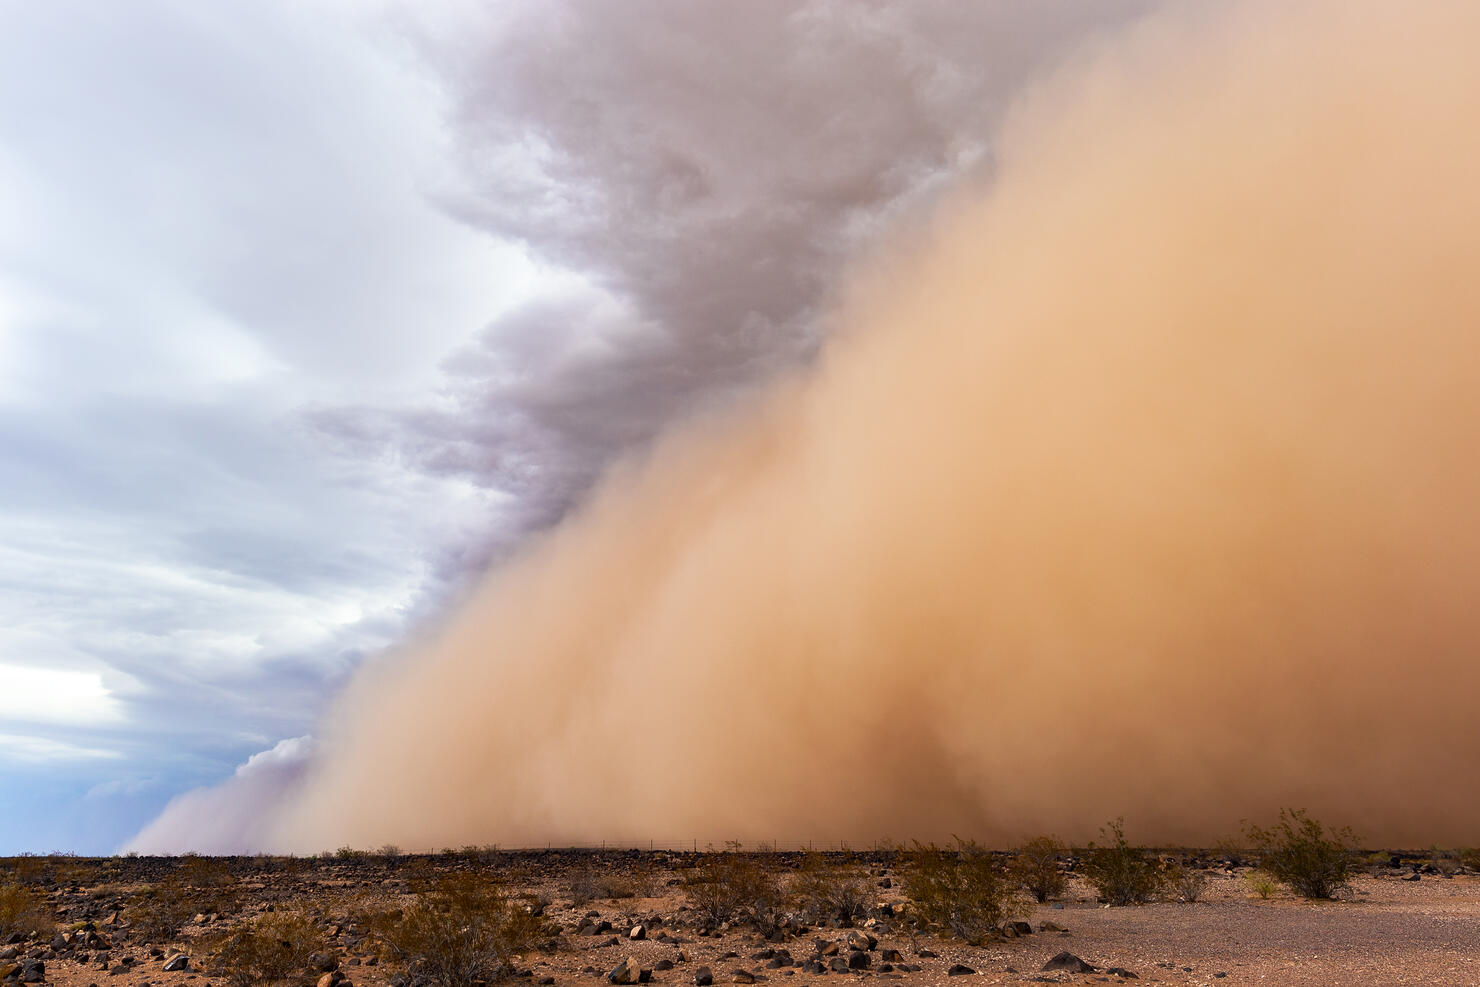 A Dense Haboob Dust Storm Moves Across The Desert Near Phoenix, Arizona.